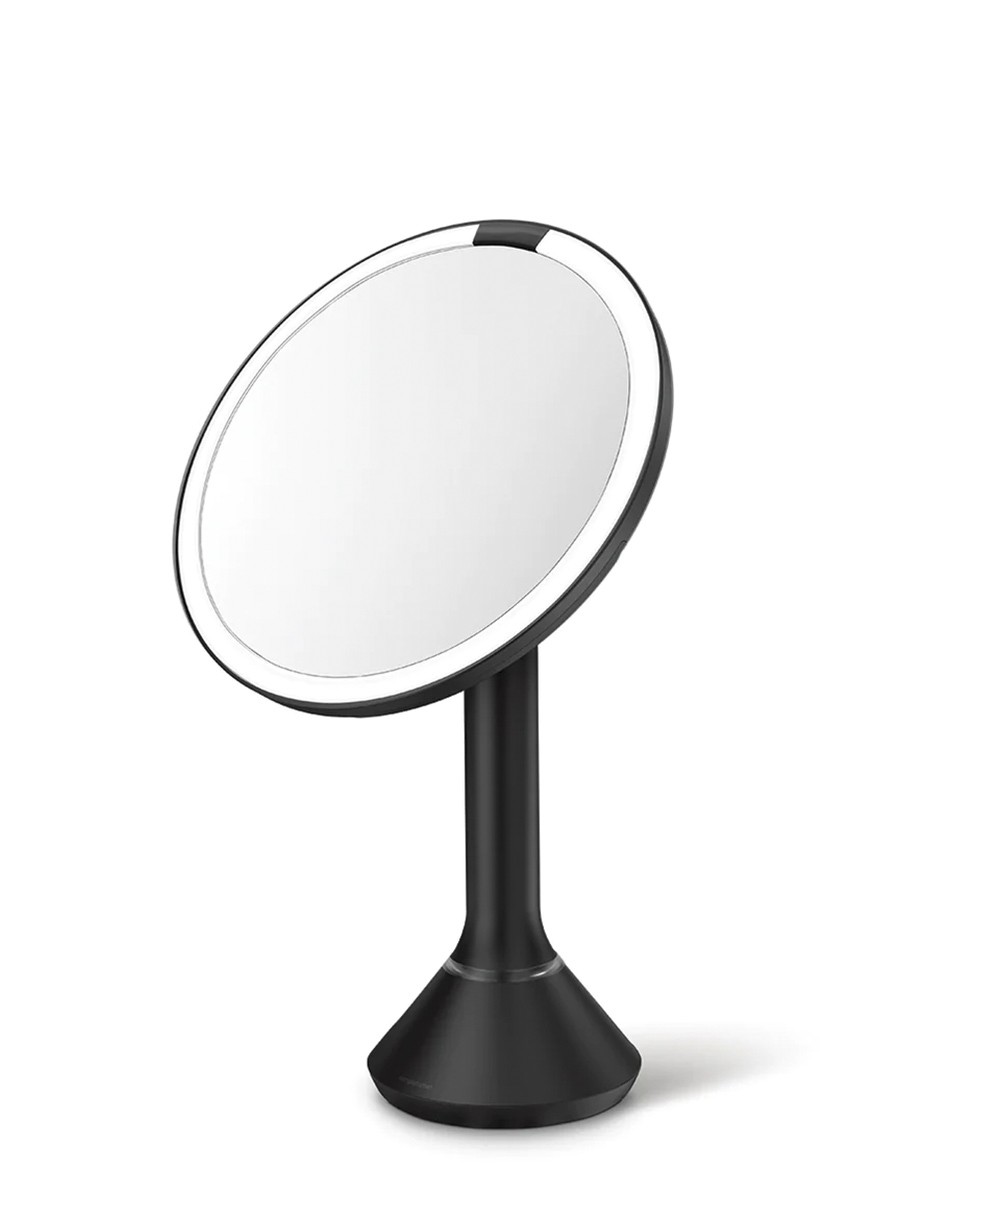 Hier abgebildet ein Produktbild eines Kosmetikspiegels von simplehuman in mattschwarz